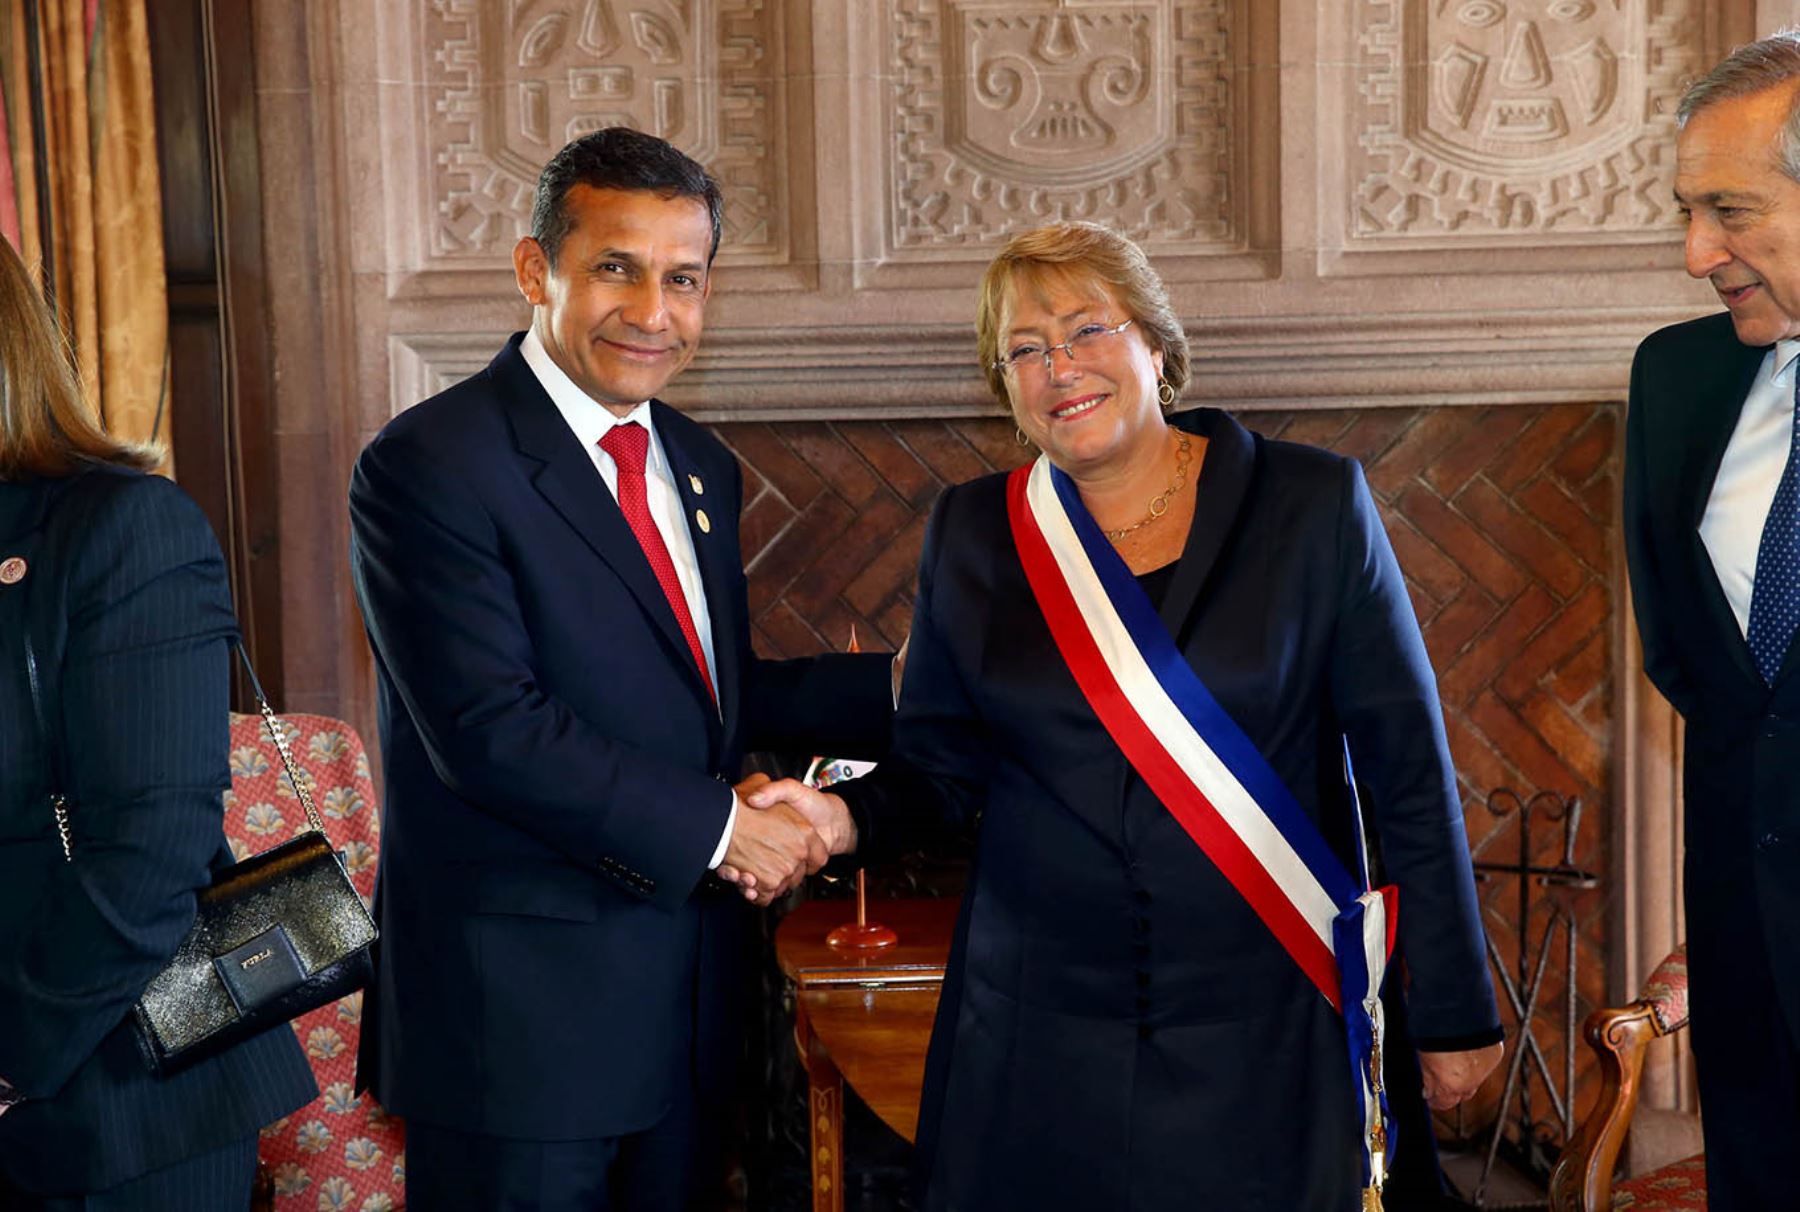 Jefe del Estado, Ollanta Humala Tasso, se reunió con la mandataria Michelle Bachelet en el palacio presidencial de Cerro Castillo, de Viña del Mar. Foto: ANDINA/Prensa Presidencia.